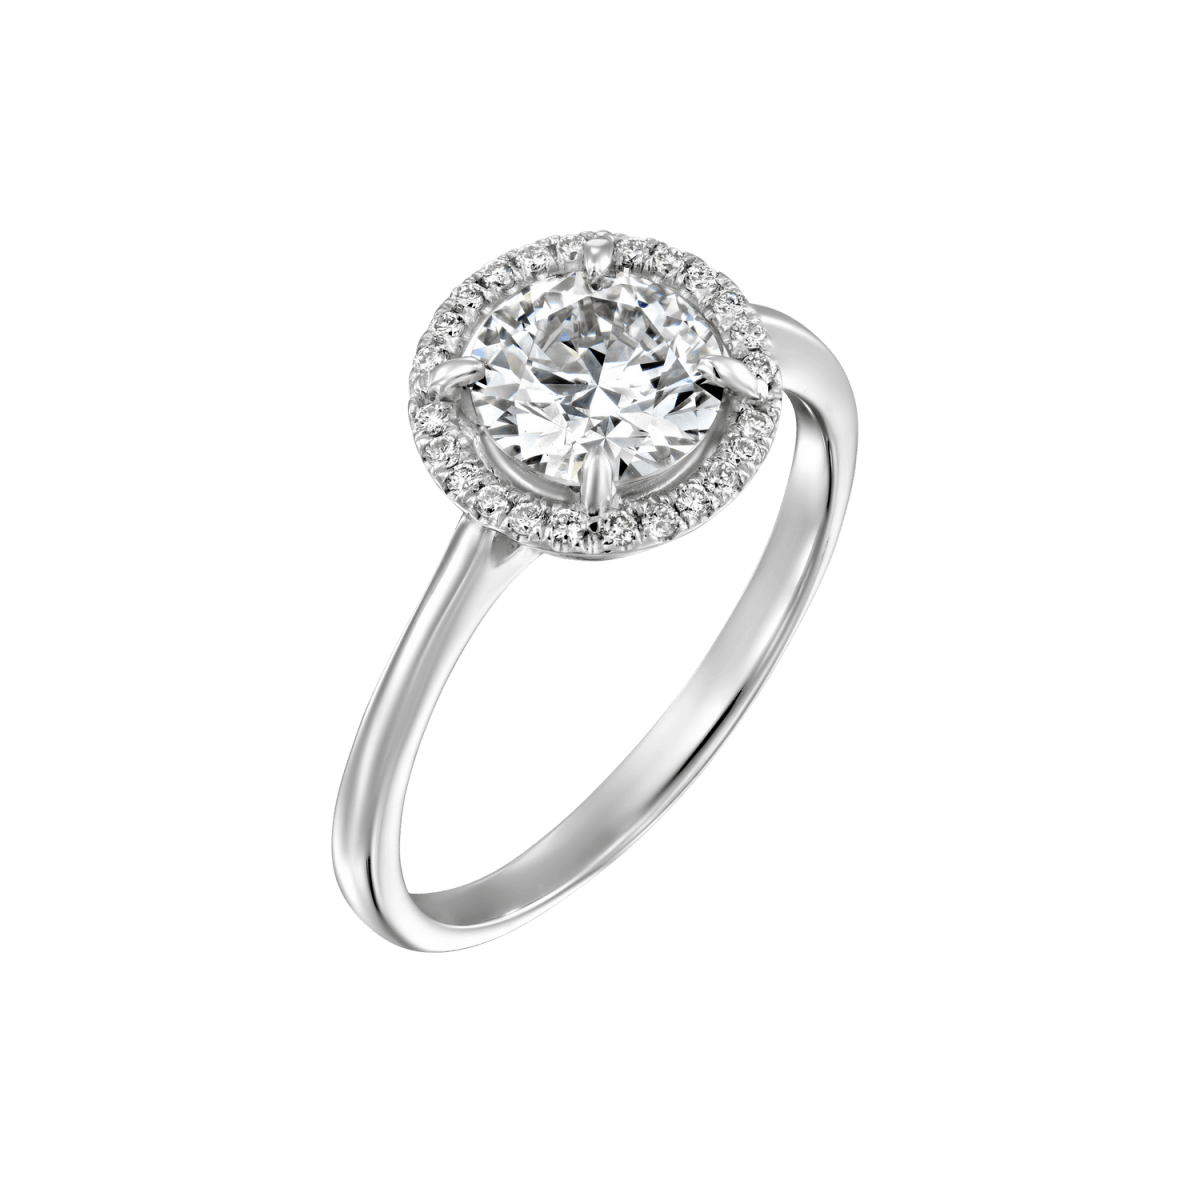 "Lisa" - White Gold Lab Grown Diamond Engagement Ring 1.01ct. - main